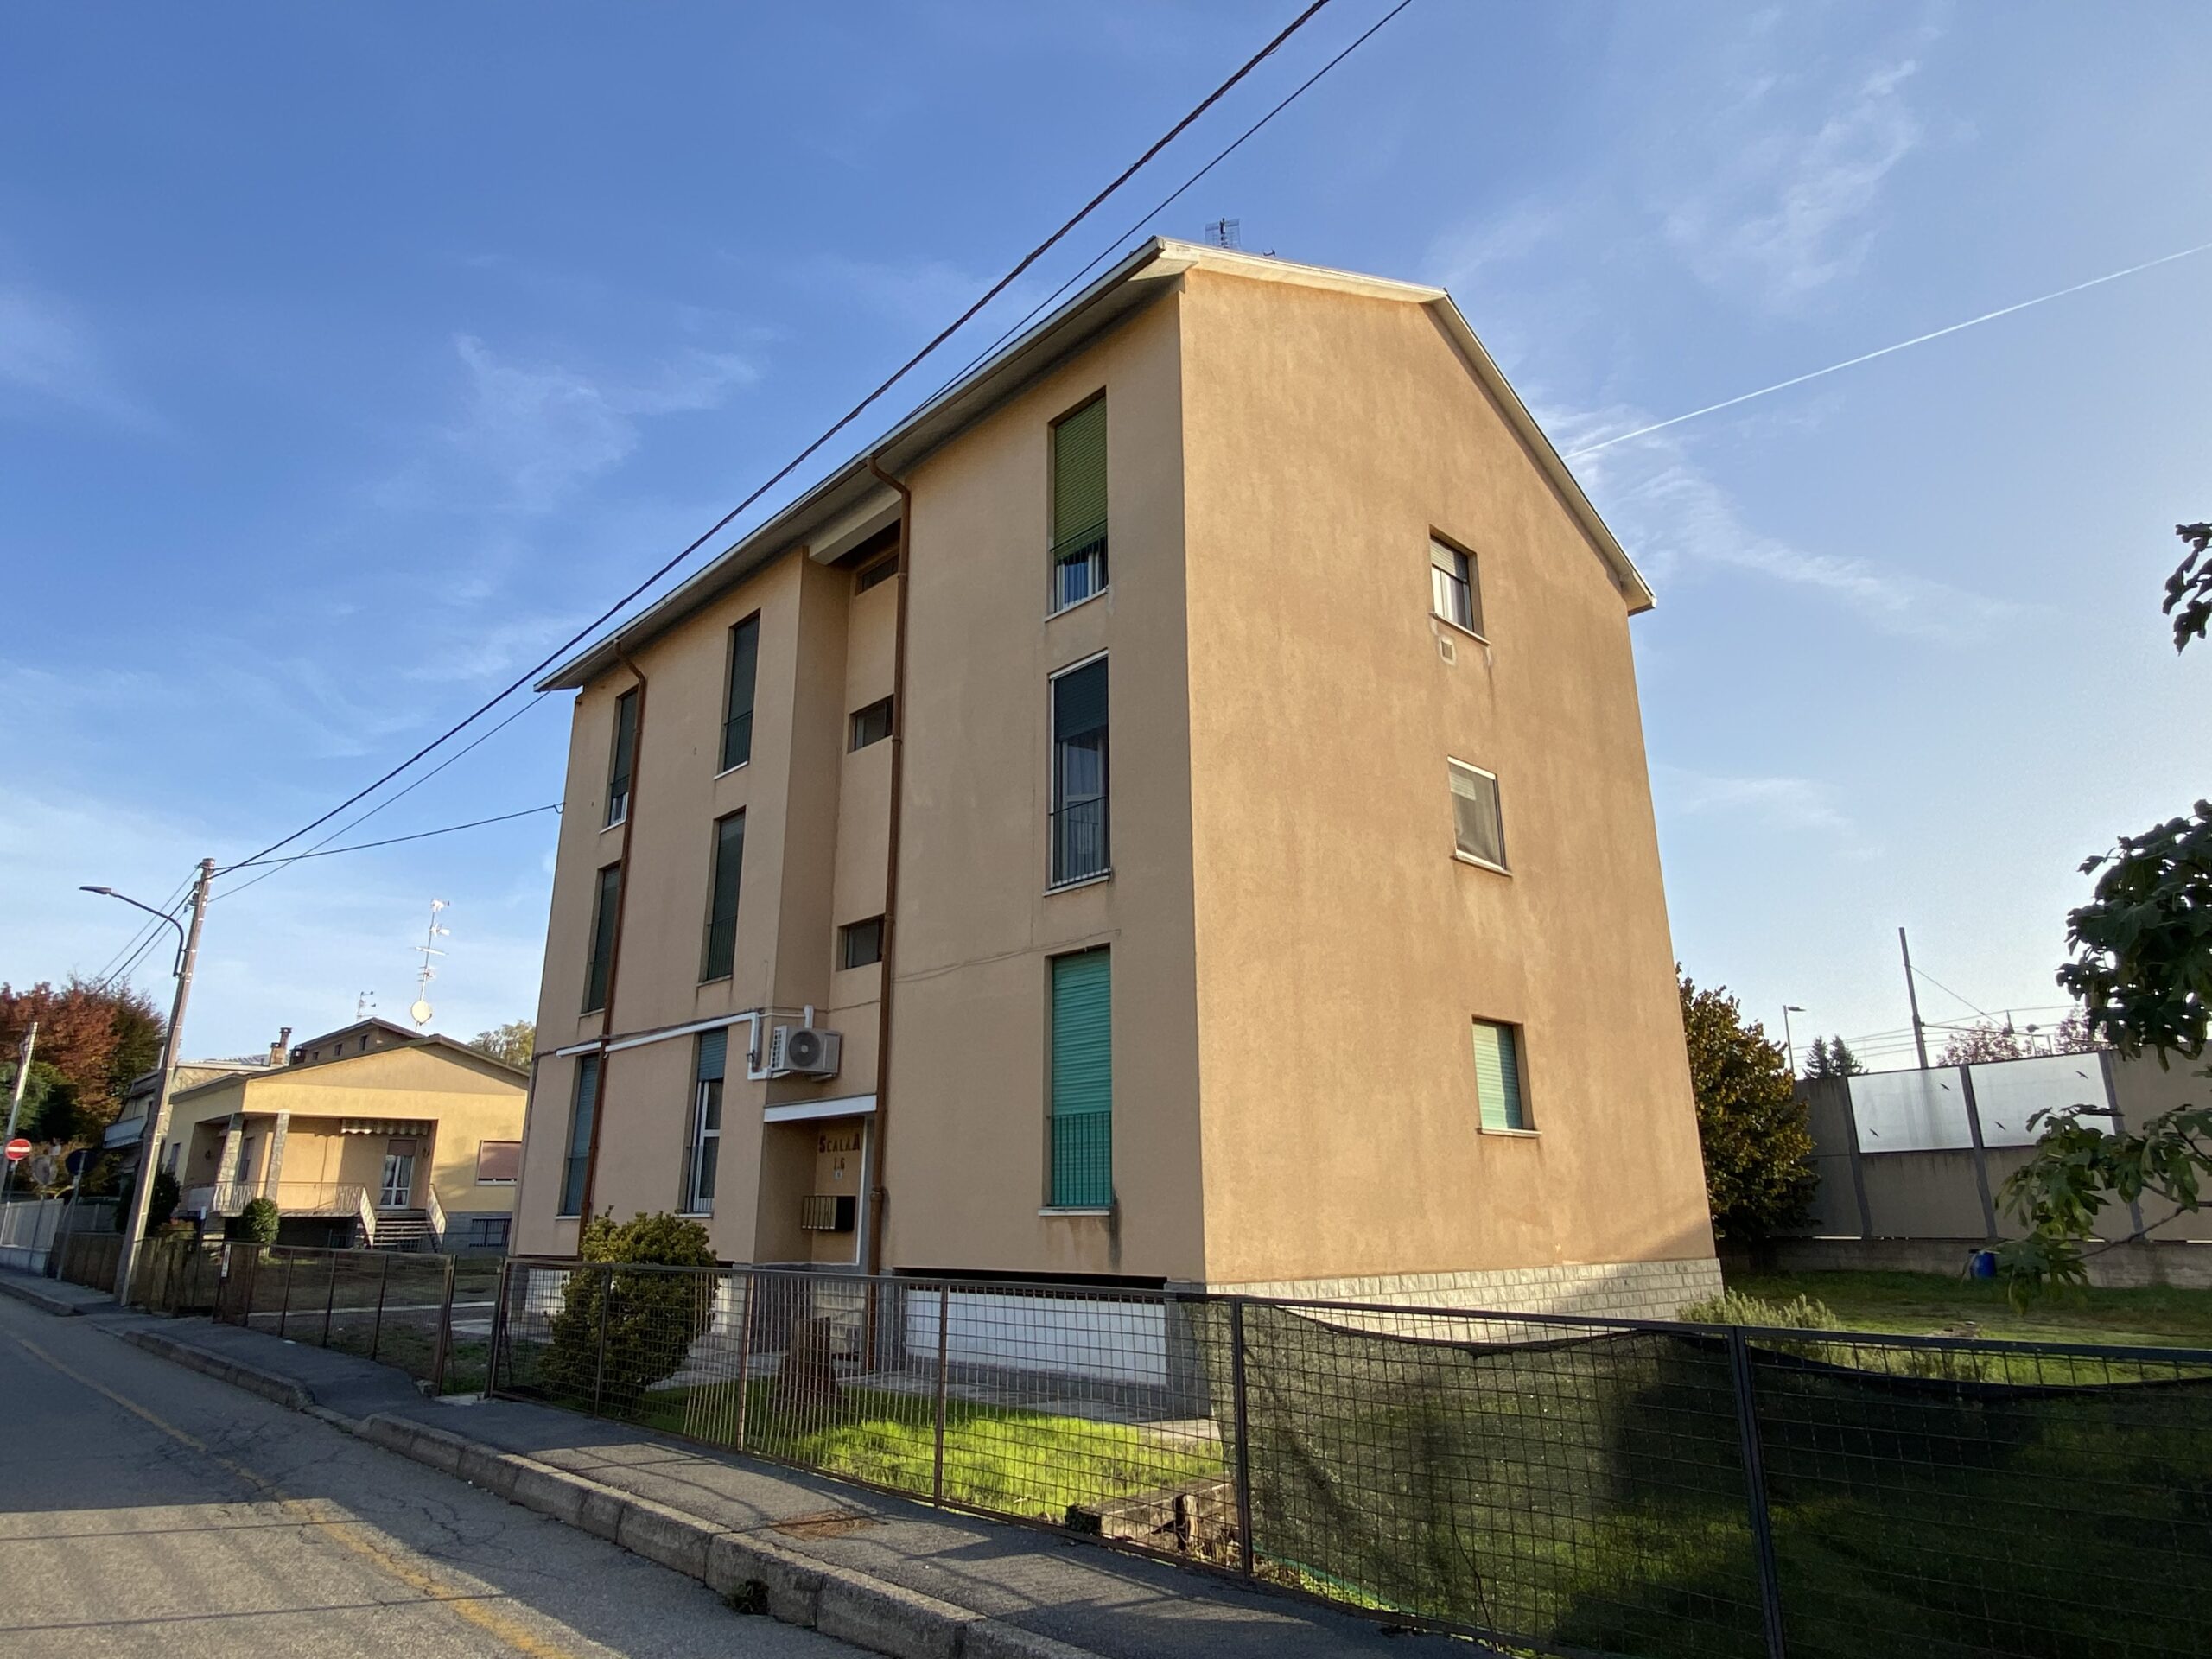 Appartamento di due locali in vendita a Vanzaghello